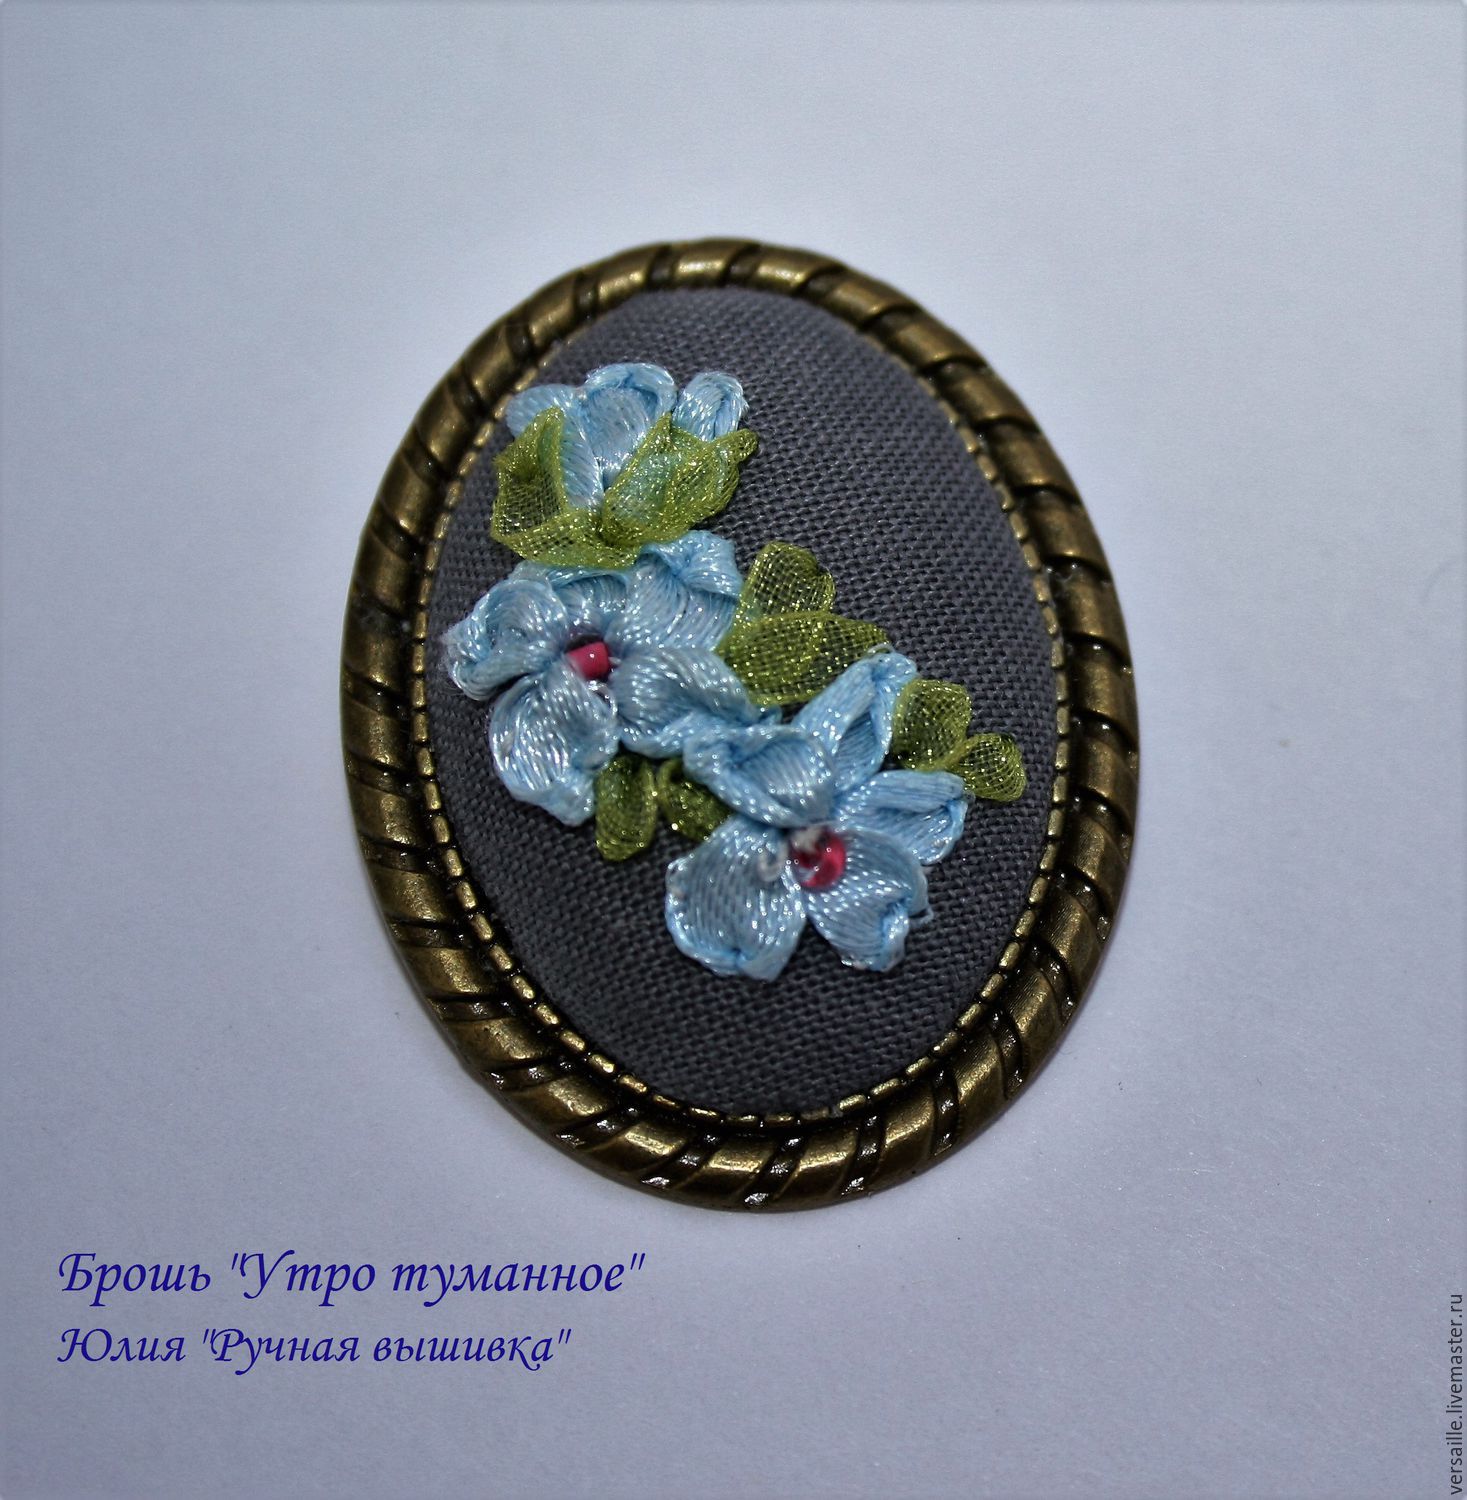 brooch, brooch flowers, brooch embroidery brooch with embroidered flowers, blue flowers, gray brooch, fashion jewelry, embroidered jewelry with flowers